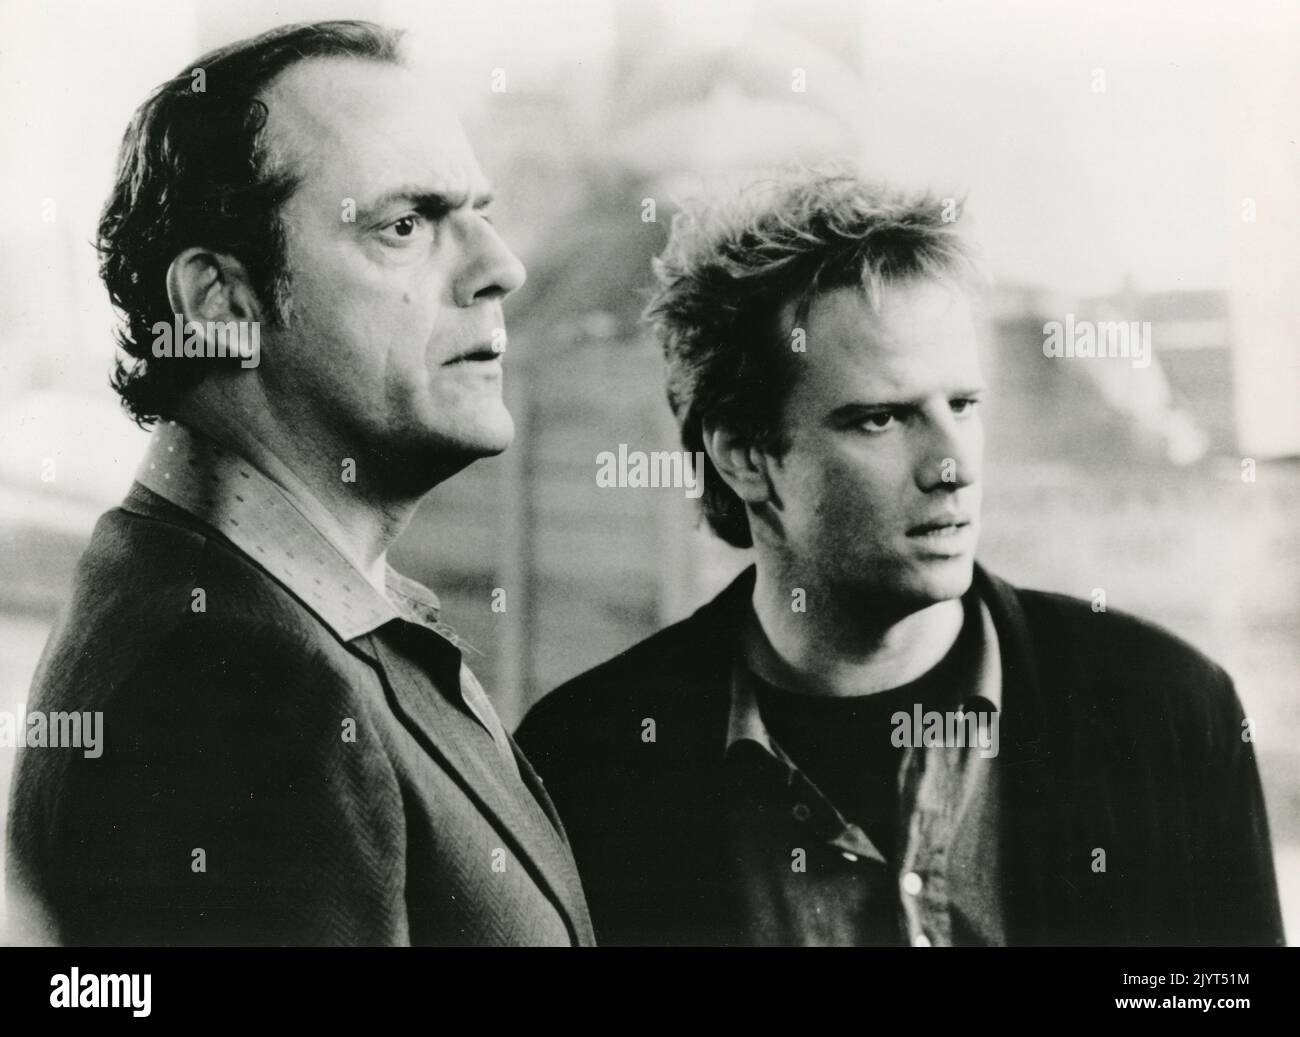 L'acteur français Christopher Lambert (à gauche) et l'acteur Christopher Lloyd dans le film Pourquoi moi ?, USA 1990 Banque D'Images